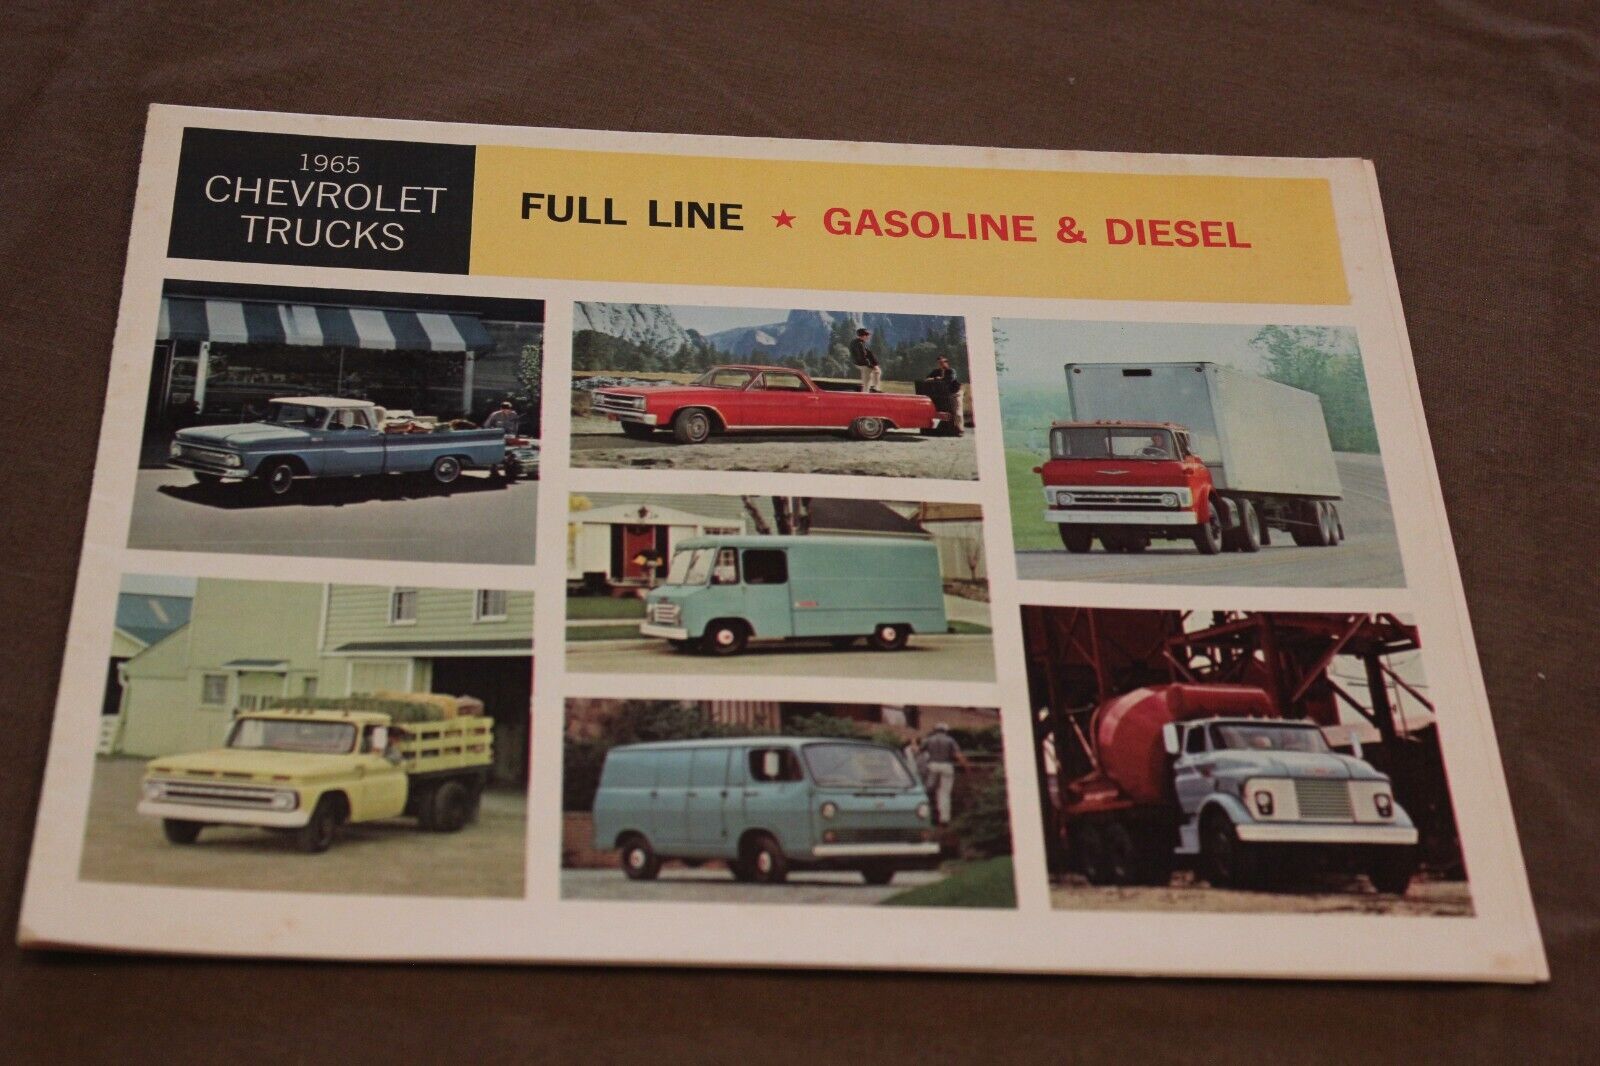 Vintage Brochure for Chevrolet Trucks 1965